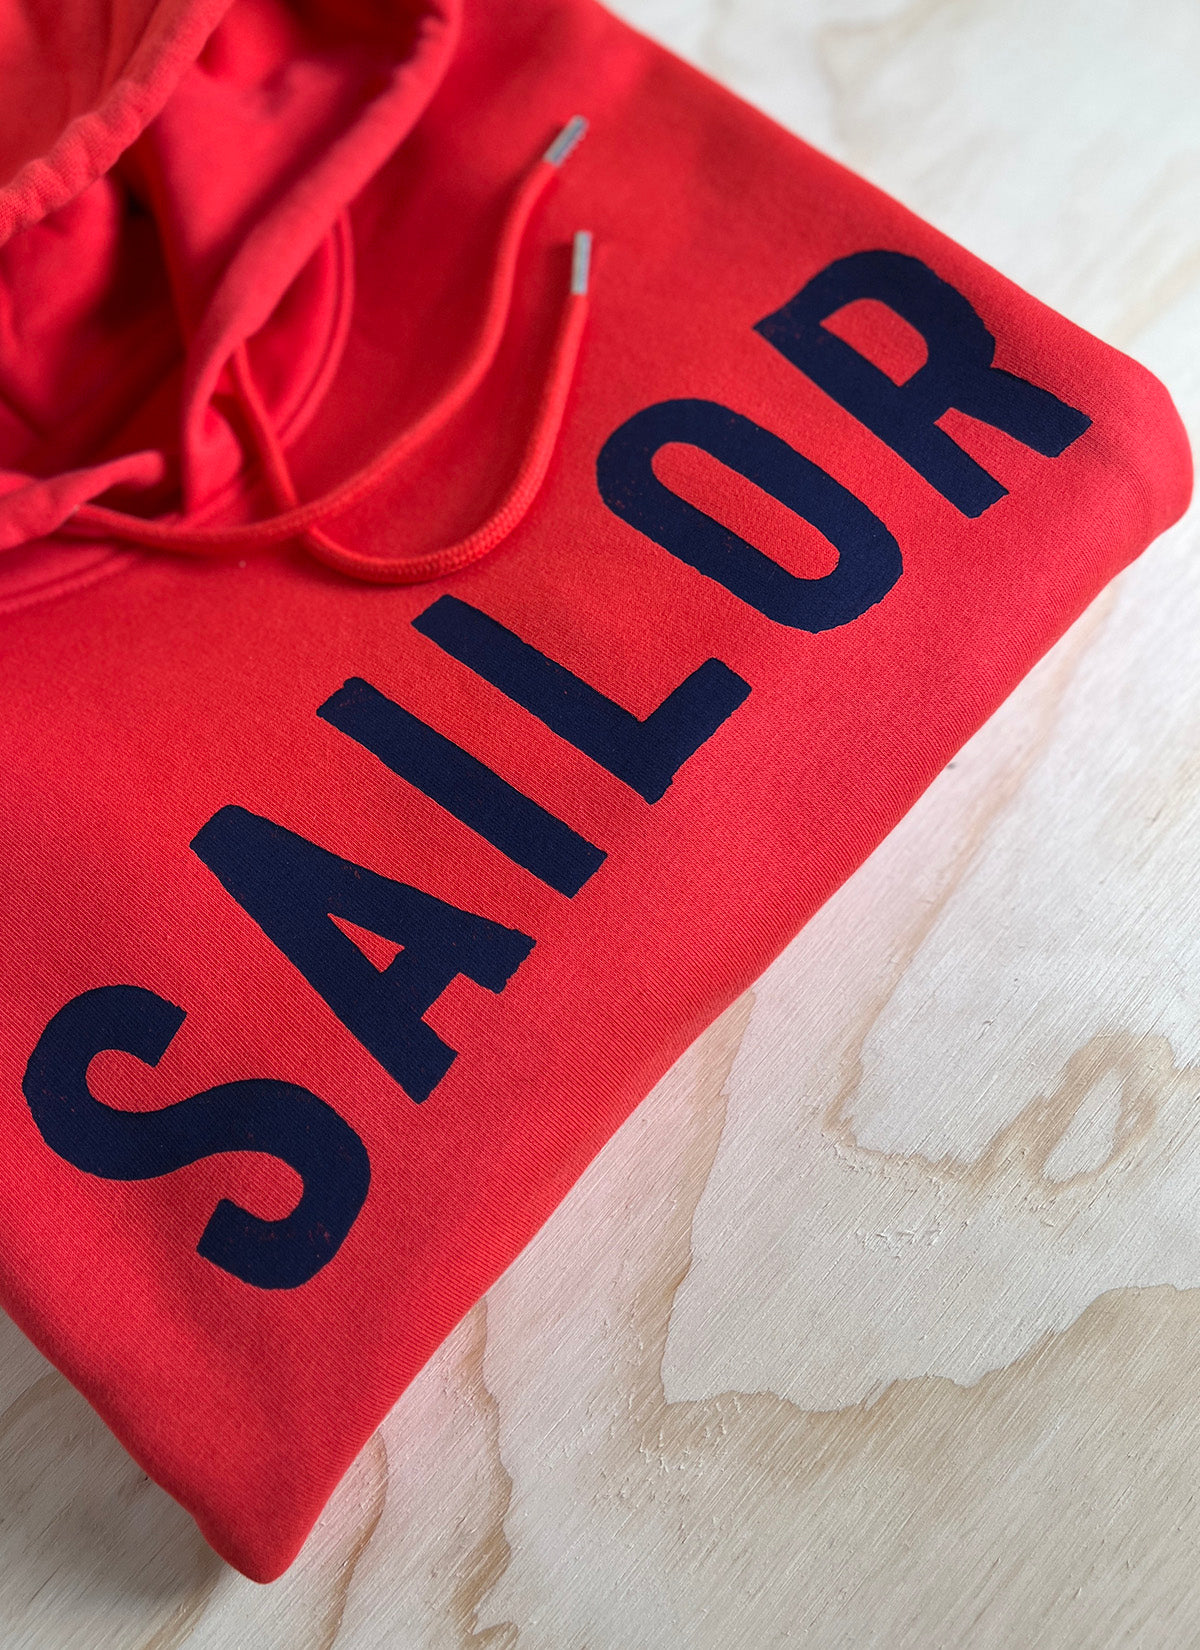 Hoodie "Sailor"